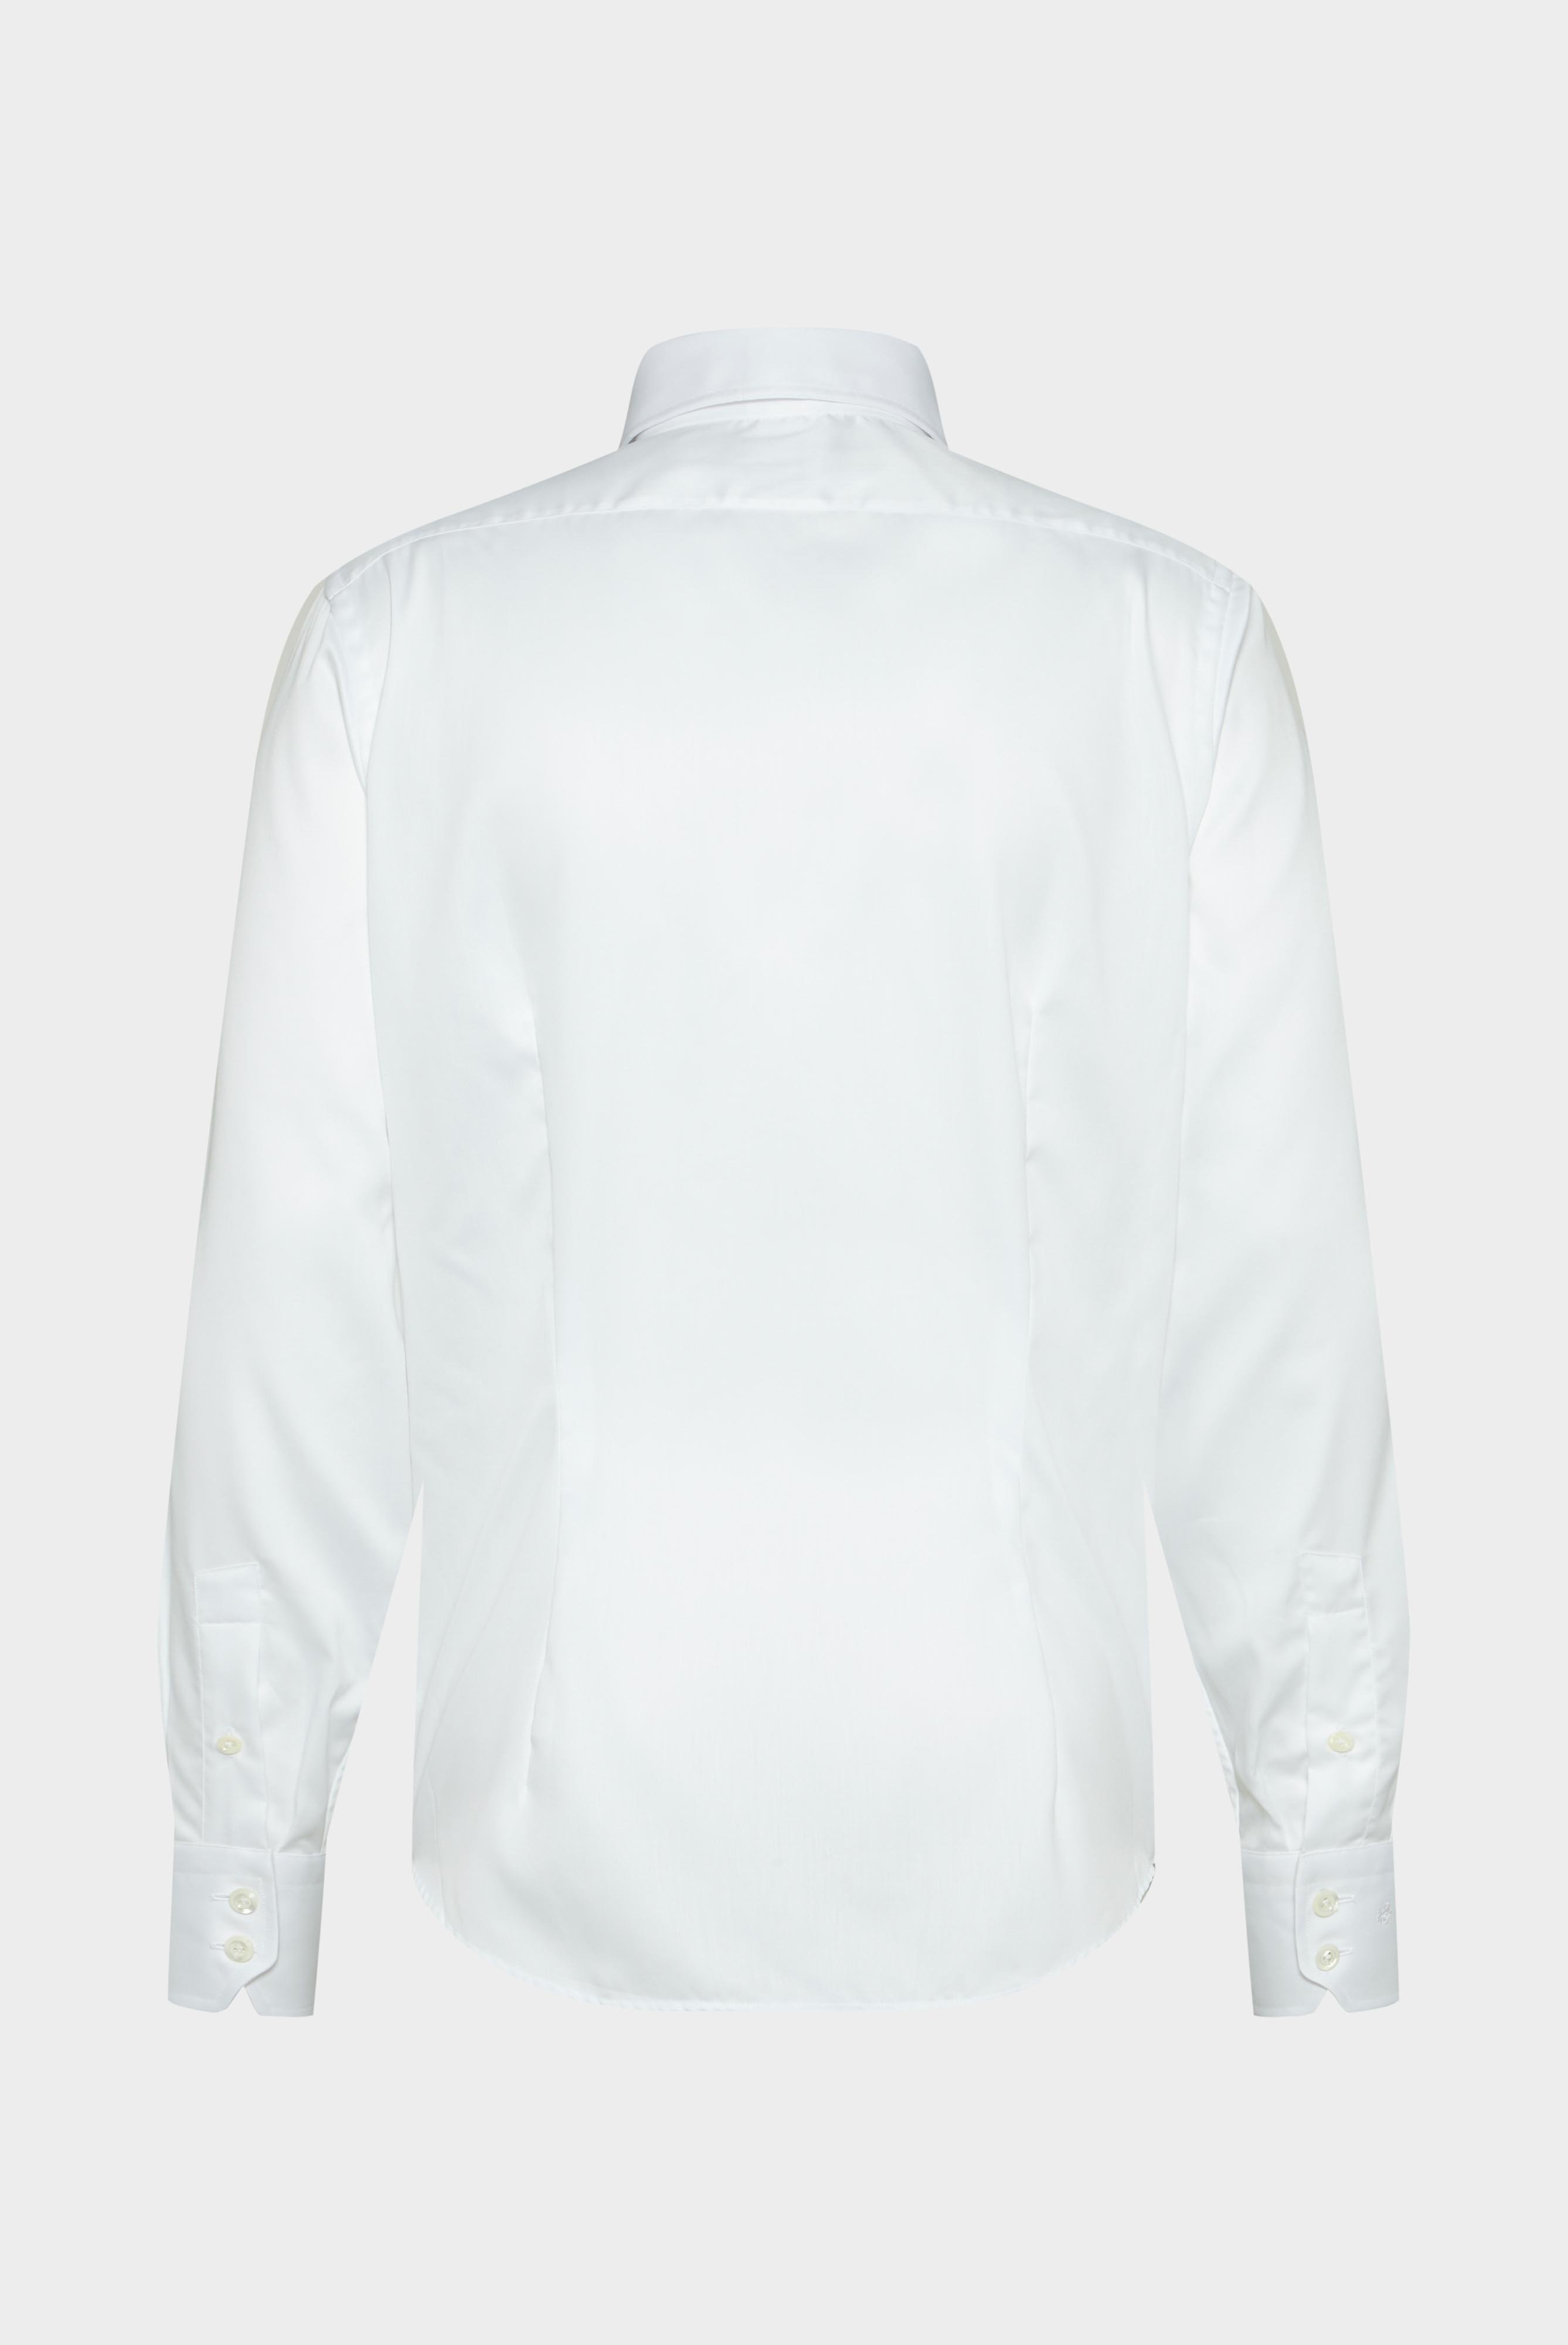 Bügelleichte Hemden+Bügelfreies Twill Hemd Tailor Fit+20.2020.FQ.132241.000.37